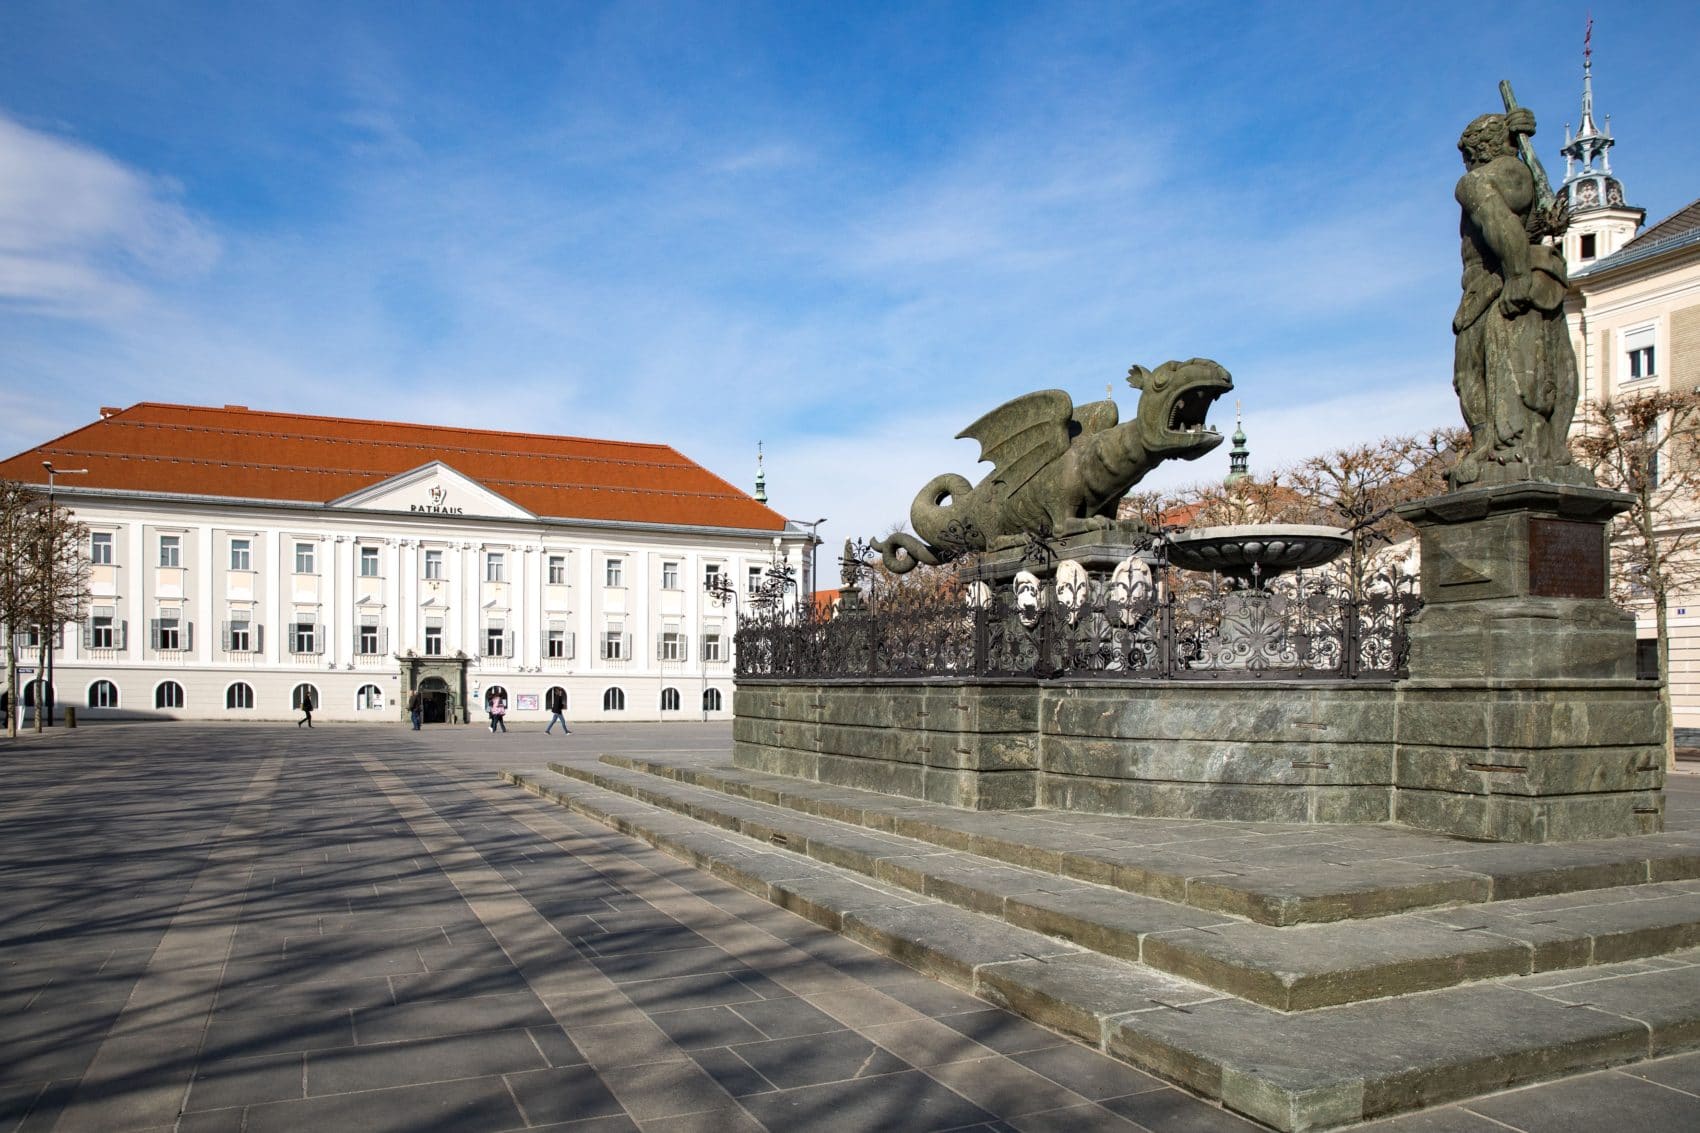 Der Neue Platz in Klagenfurt sei, so Germ, das Aushängeschild für die Landeshauptstadt. Alkoholgelage hätten dort nichts zu suchen.